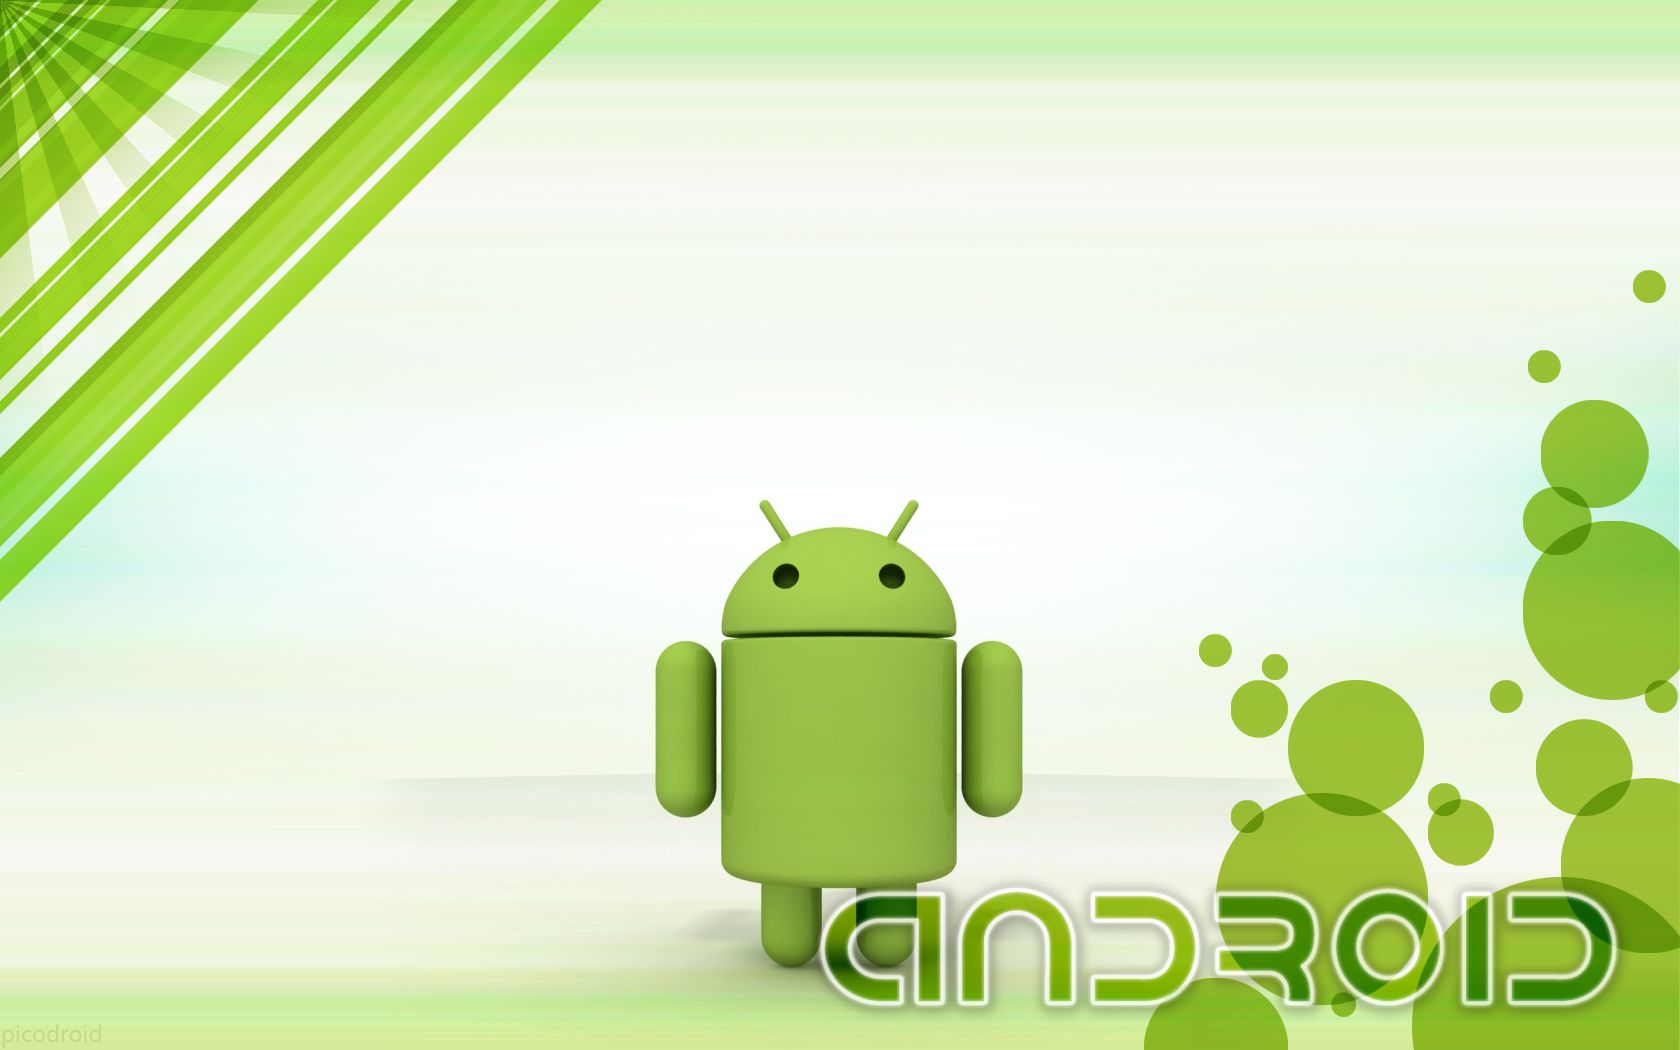 tapete versteckt für android,grün,blatt,illustration,technologie,animation